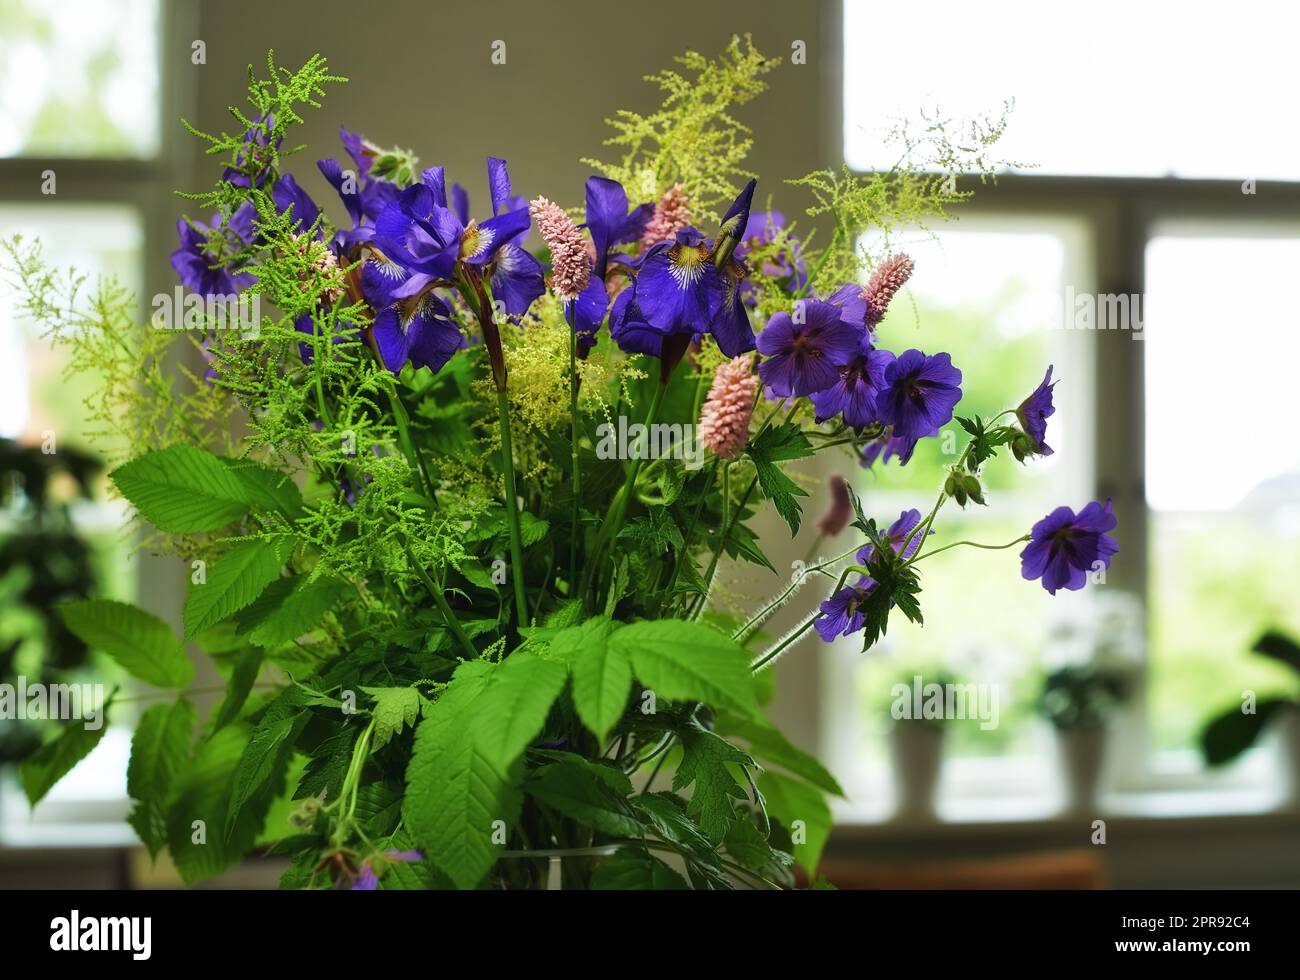 Ein Haufen Wiener Kraniche in einer Vase als Dekoration für eine Hochzeitsfeier oder Zeremonie. Ein wunderschöner Strauß von violetten Blumen als Dekor an einem Veranstaltungsort. Dekorative Pflanzen in einem Gebäude Stockfoto